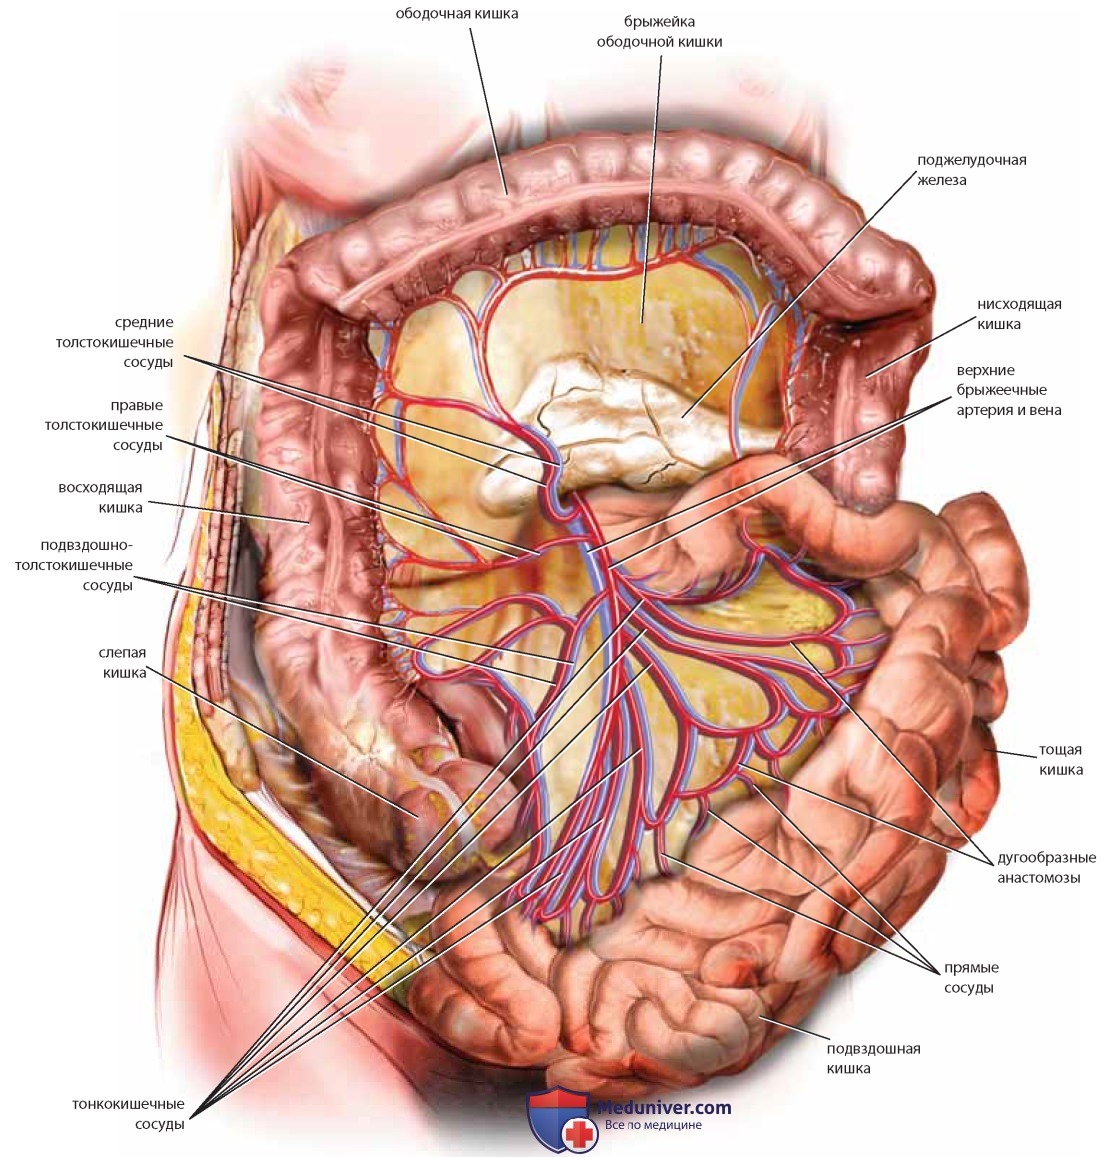 Анатомия внутренних органов женщины фото. Верхняя брыжеечная Вена анатомия. Анатомия женщины в разрезе. Анатомия малого таза женщины.